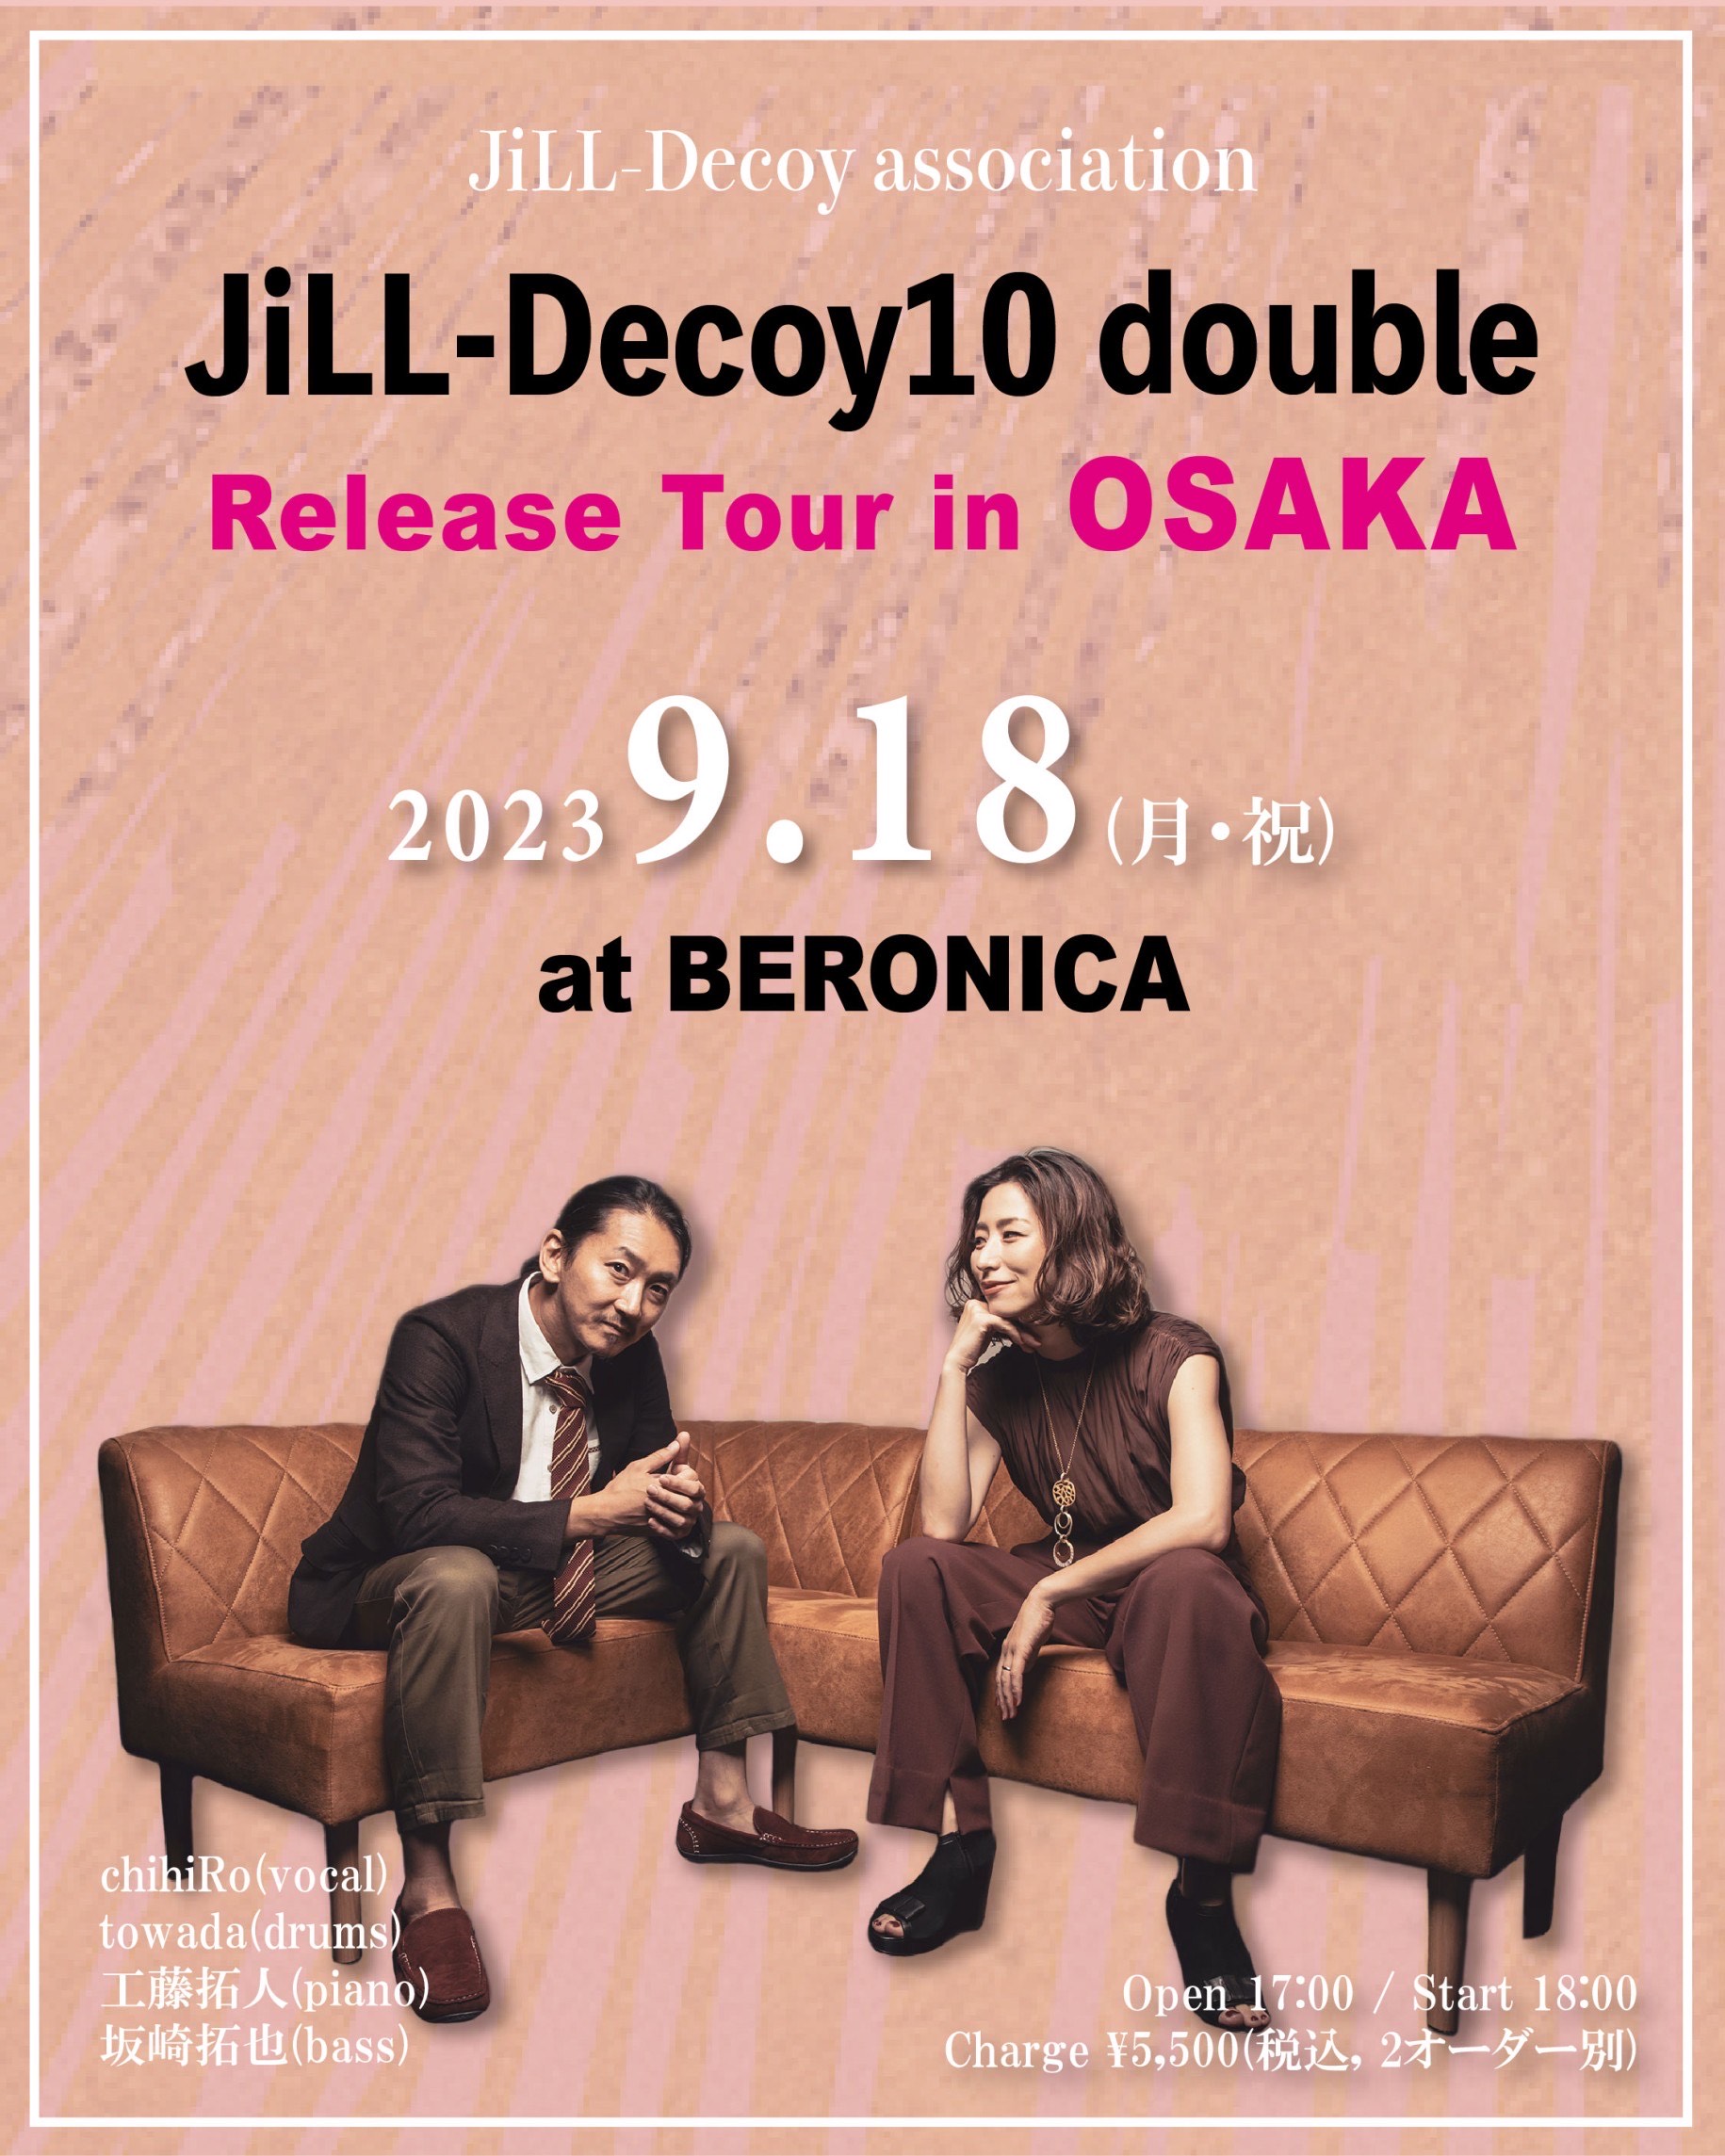 【2023年9月18日(月)】JiLL-Decoy10~double~Release Tour in Osaka